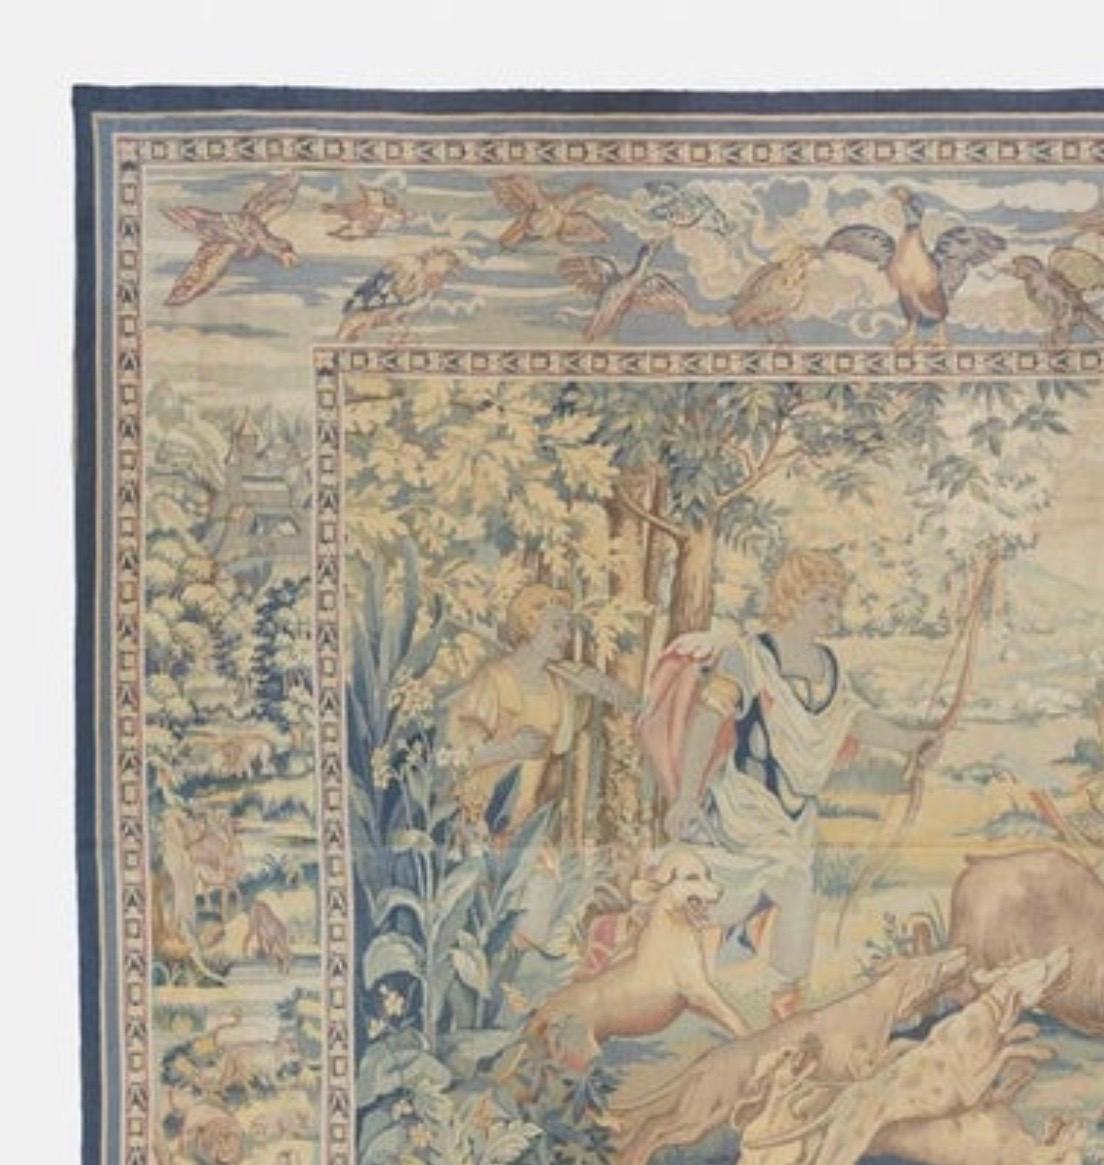 Dies ist eine schöne antike 19. Jahrhundert Square Französisch Aubusson Wandteppich zeigt eine Jagd-Szene an einem schönen Sommertag in der Landschaft mit üppigen Bäumen und Vegetation. Wir sehen, dass eine Antilope von einem Pfeil getroffen wurde